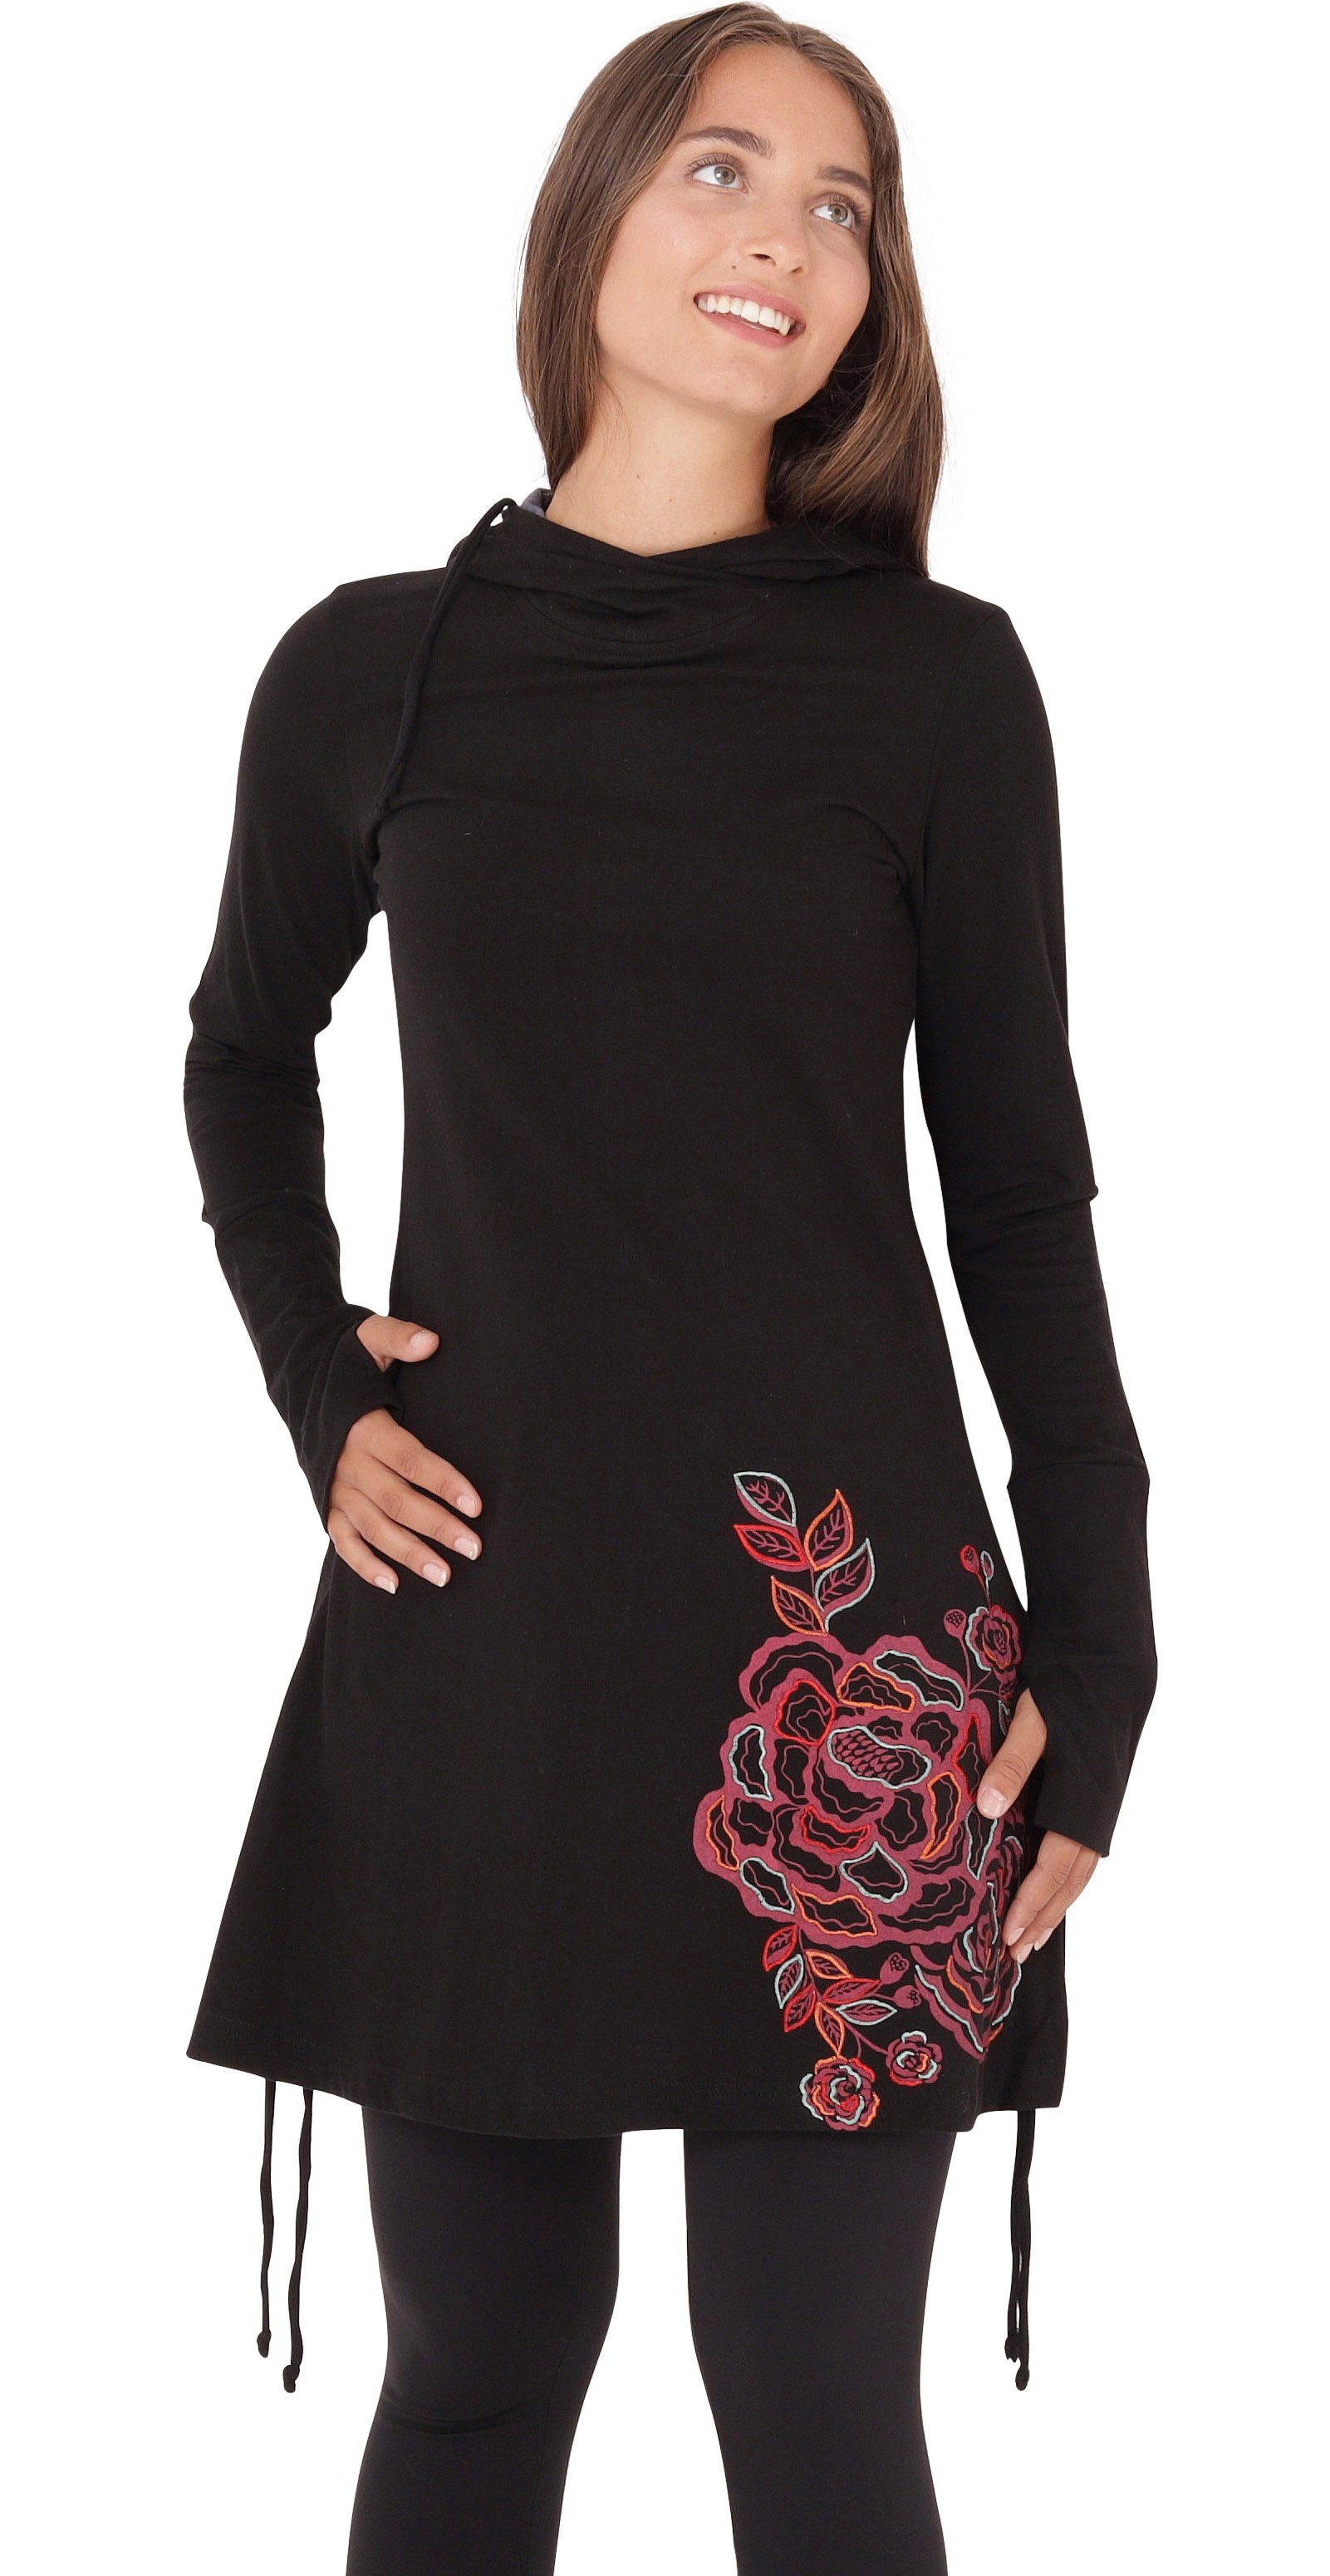 PUREWONDER A-Linien-Kleid Kapuzenkleid mit Blumen-Print dr132 Jersey Schwarz